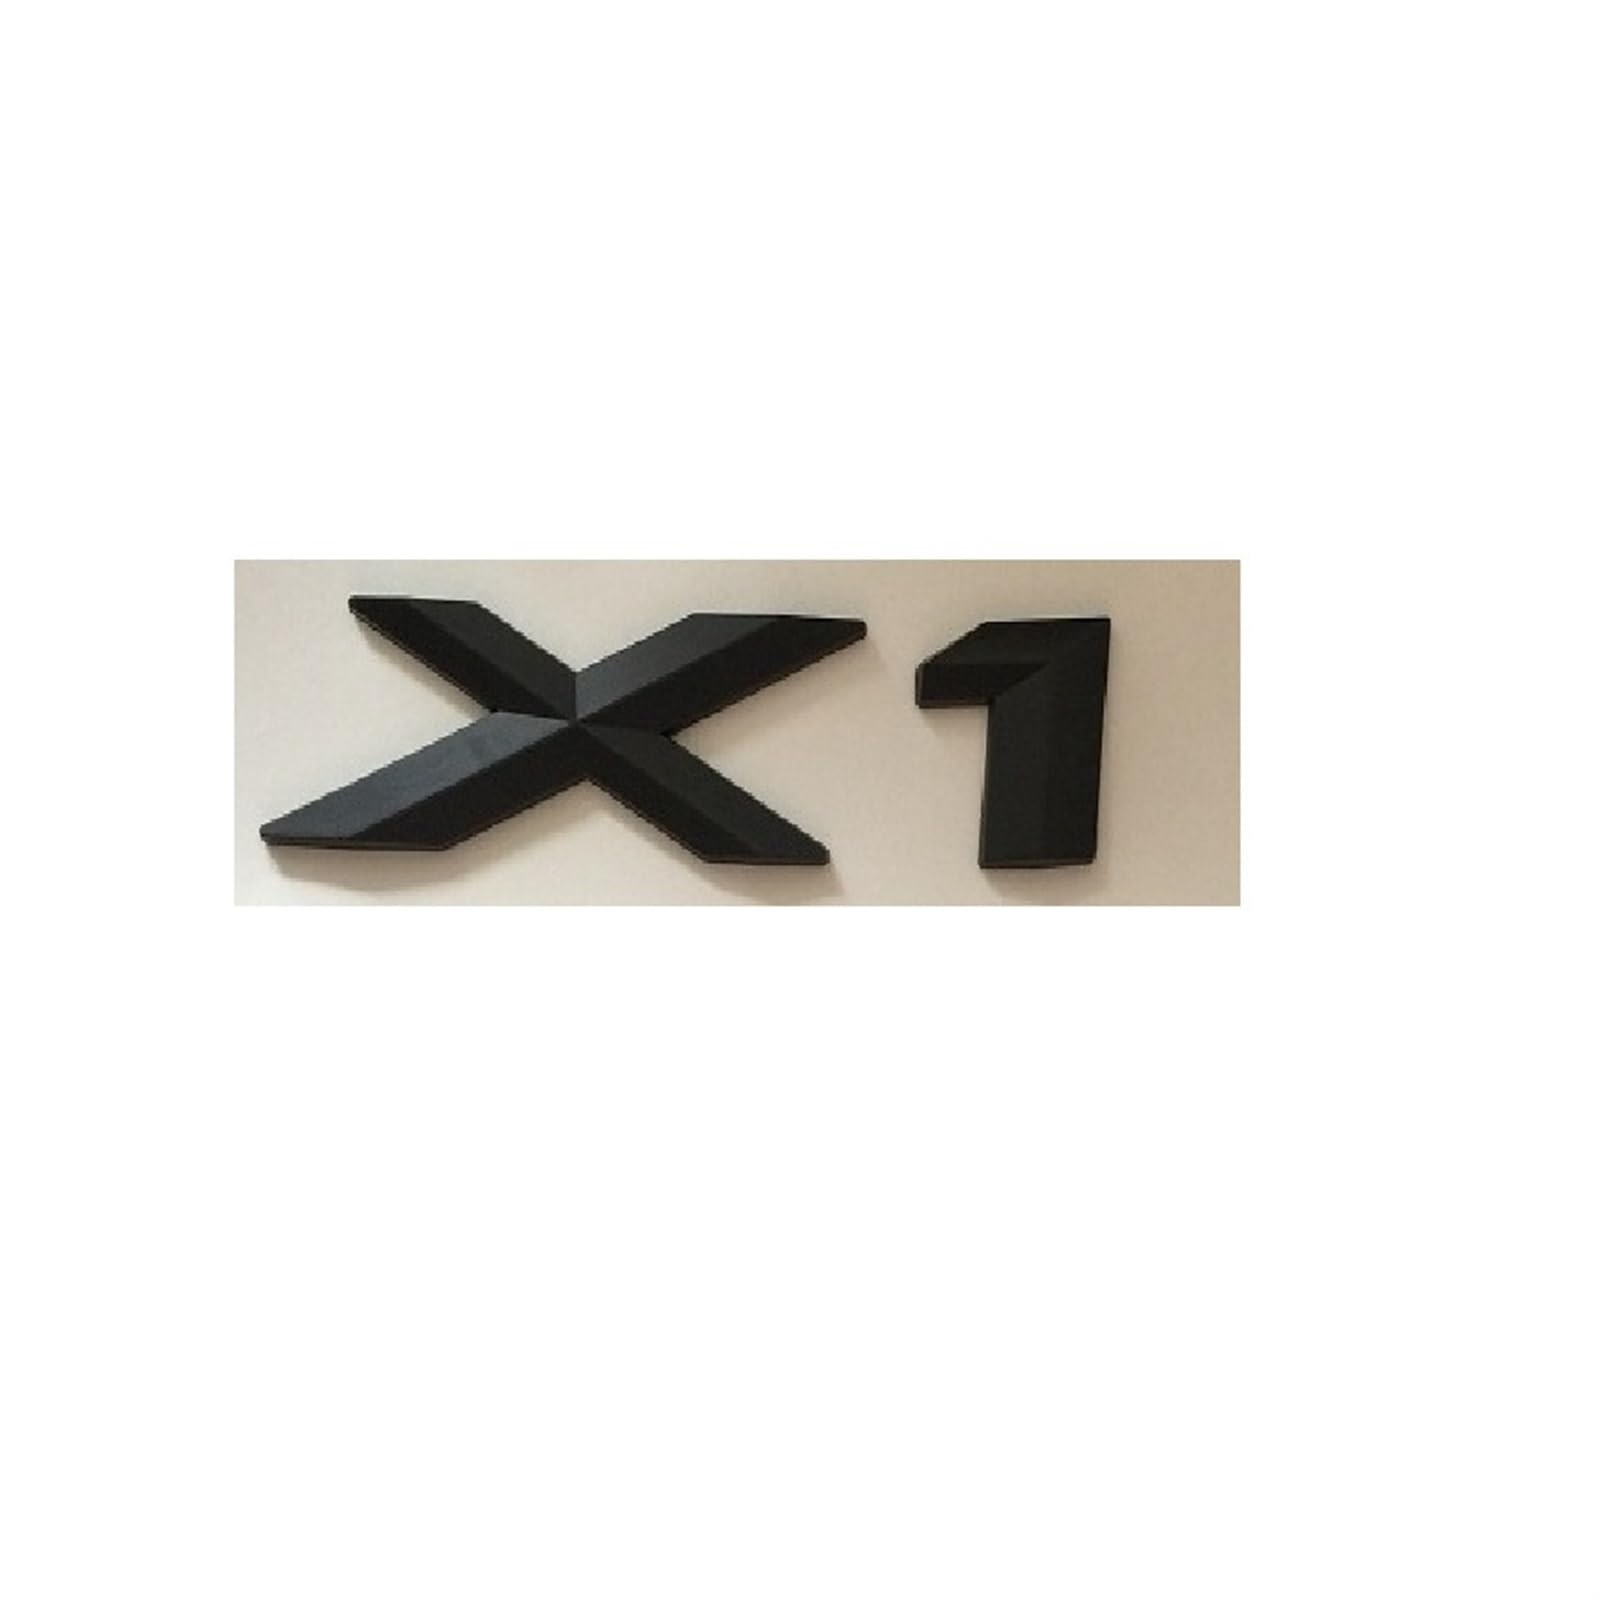 Mattschwarzer Kunststoff ABS Nummer Buchstaben Wort Kofferraum Abzeichen Emblem Aufkleber Aufkleber kompatibel for BMW X1 von LOTOAK